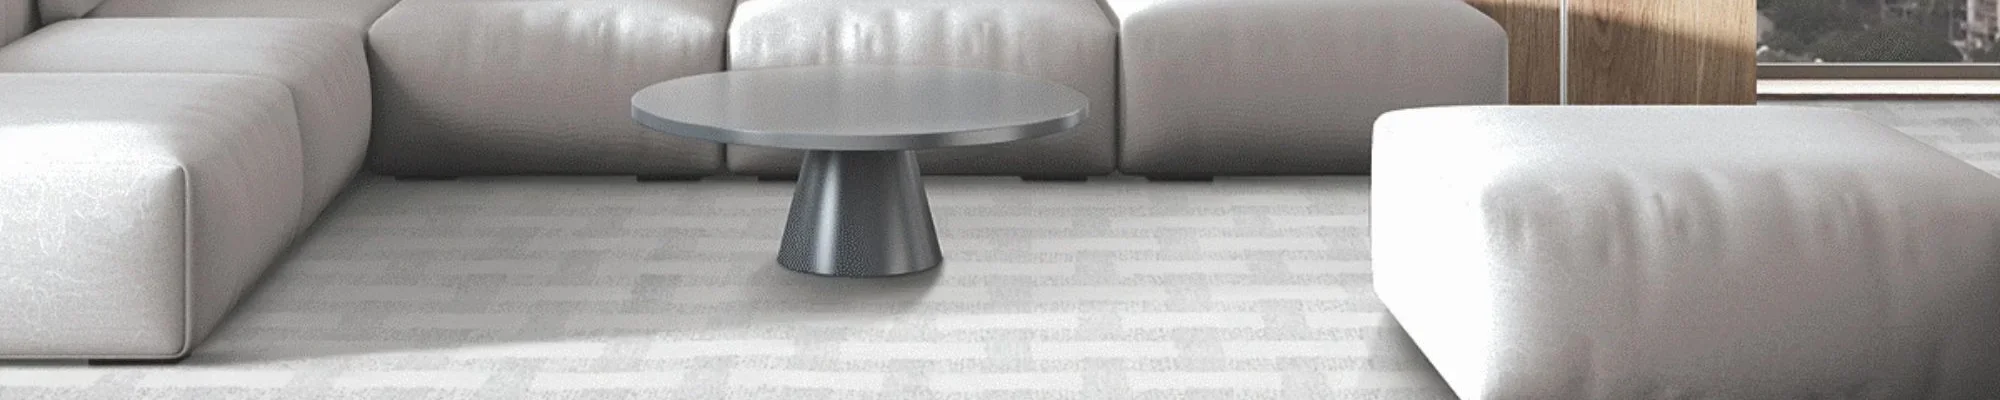 Modern carpeted living room | Pioneer Floor Coverings & Design